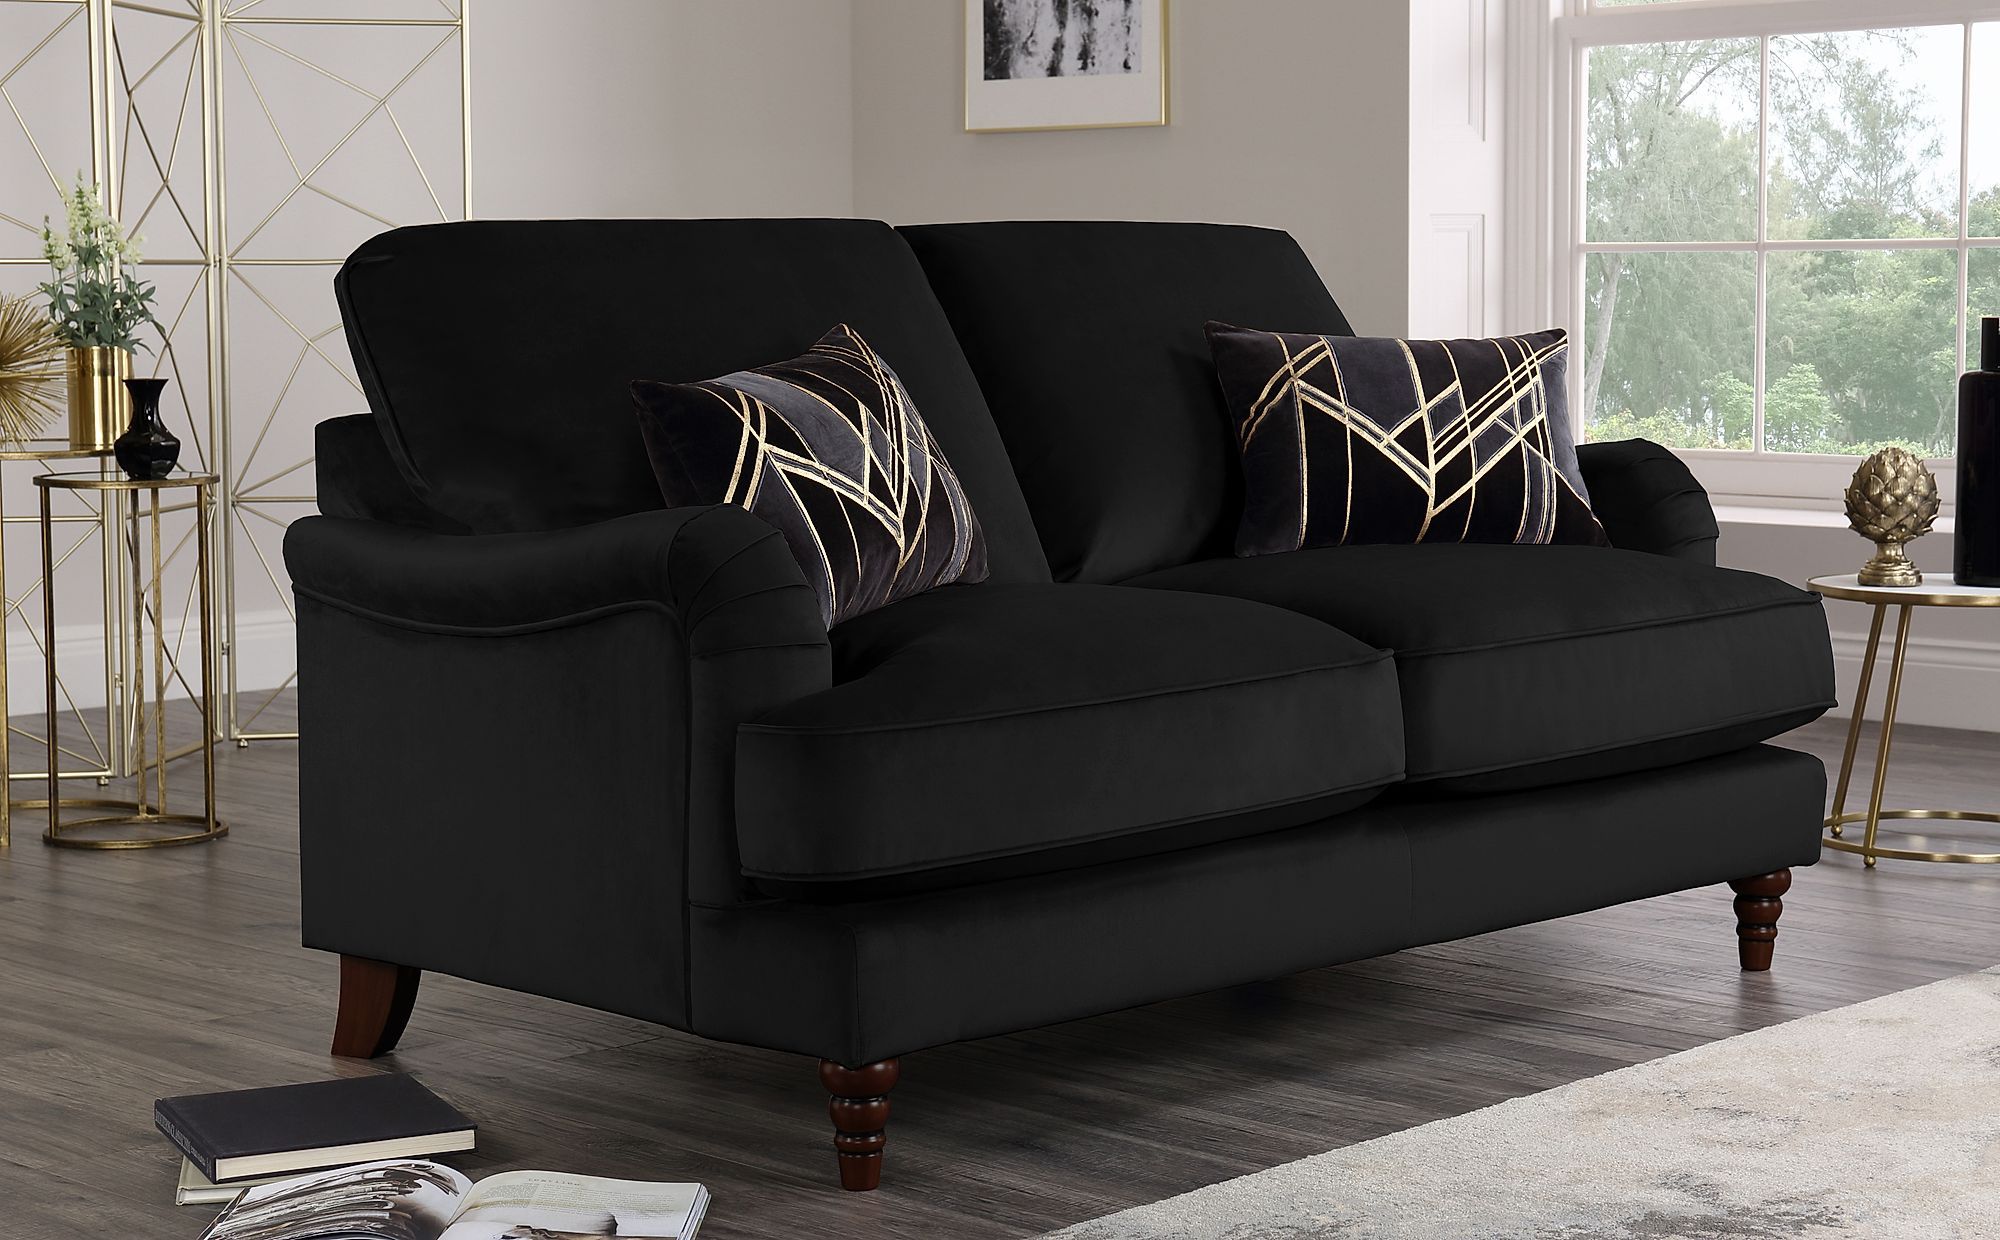 Charleston Black Velvet 2 Seater Sofa | Furniture Choice Inside Black Velvet 2 Seater Sofa Beds (Gallery 1 of 20)